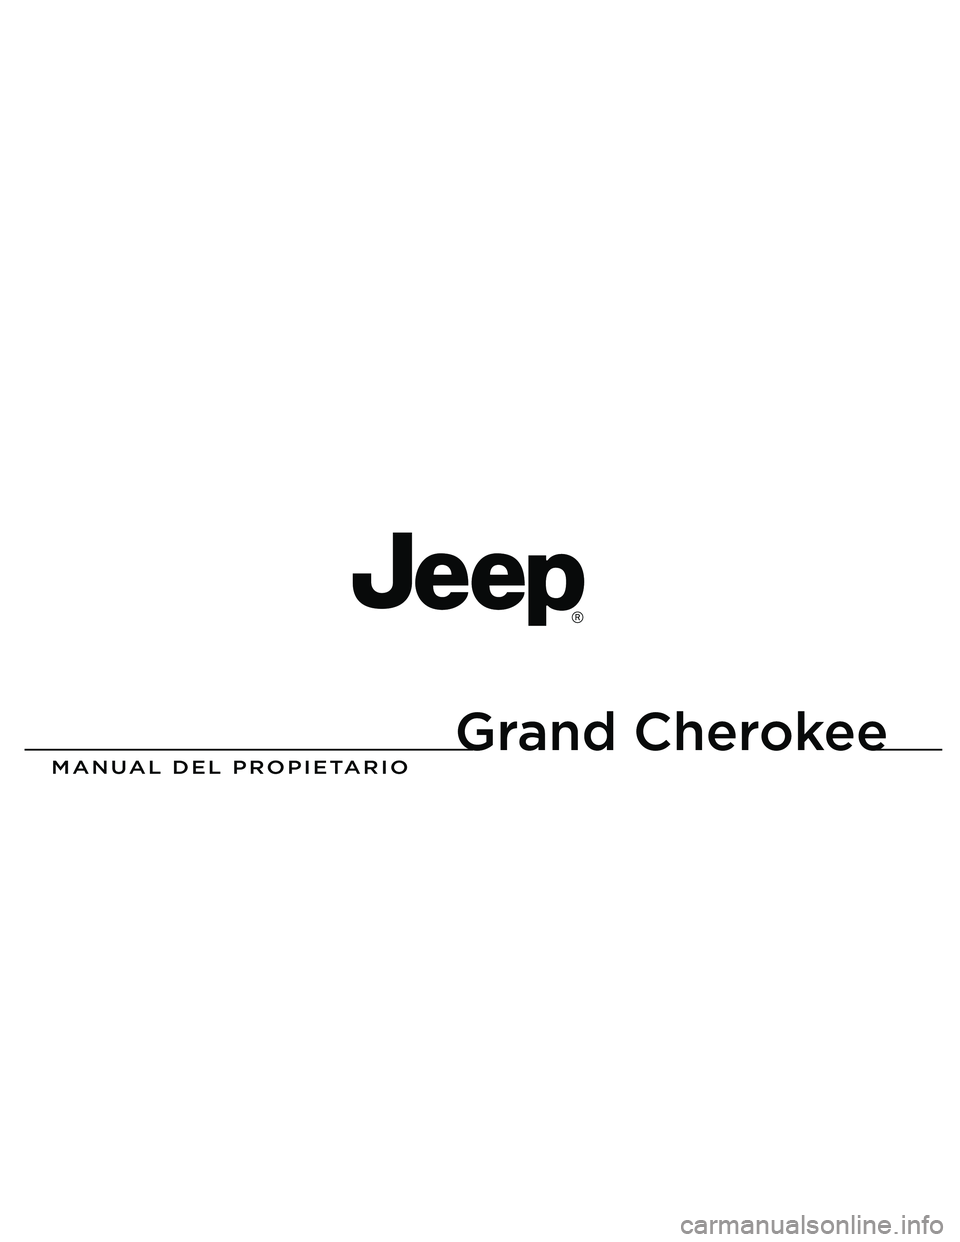 JEEP GRAND CHEROKEE 2011  Manual de Empleo y Cuidado (in Spanish) 
Grand Cherokee

MANUAL DEL PROPIETARIO
2013 Grand Cherokee
13WK741-126-PRI-AAImpreso en EE.UU. 13 